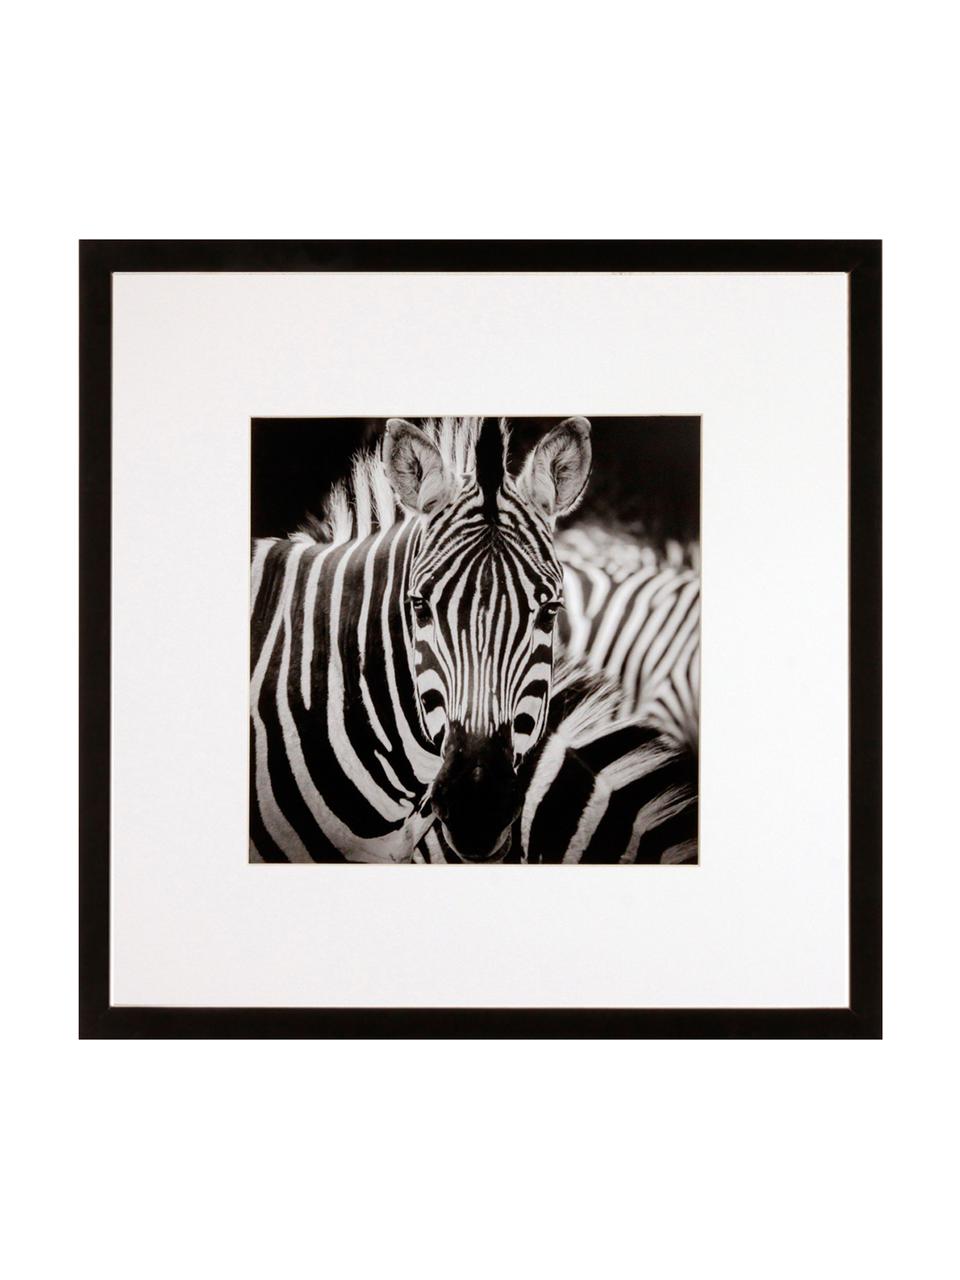 Gerahmter Digitaldruck Zebra, Bild: Digitaldruck, Rahmen: Kunststoffrahmen mit Glas, Schwarz,Weiß, 40 x 40 cm